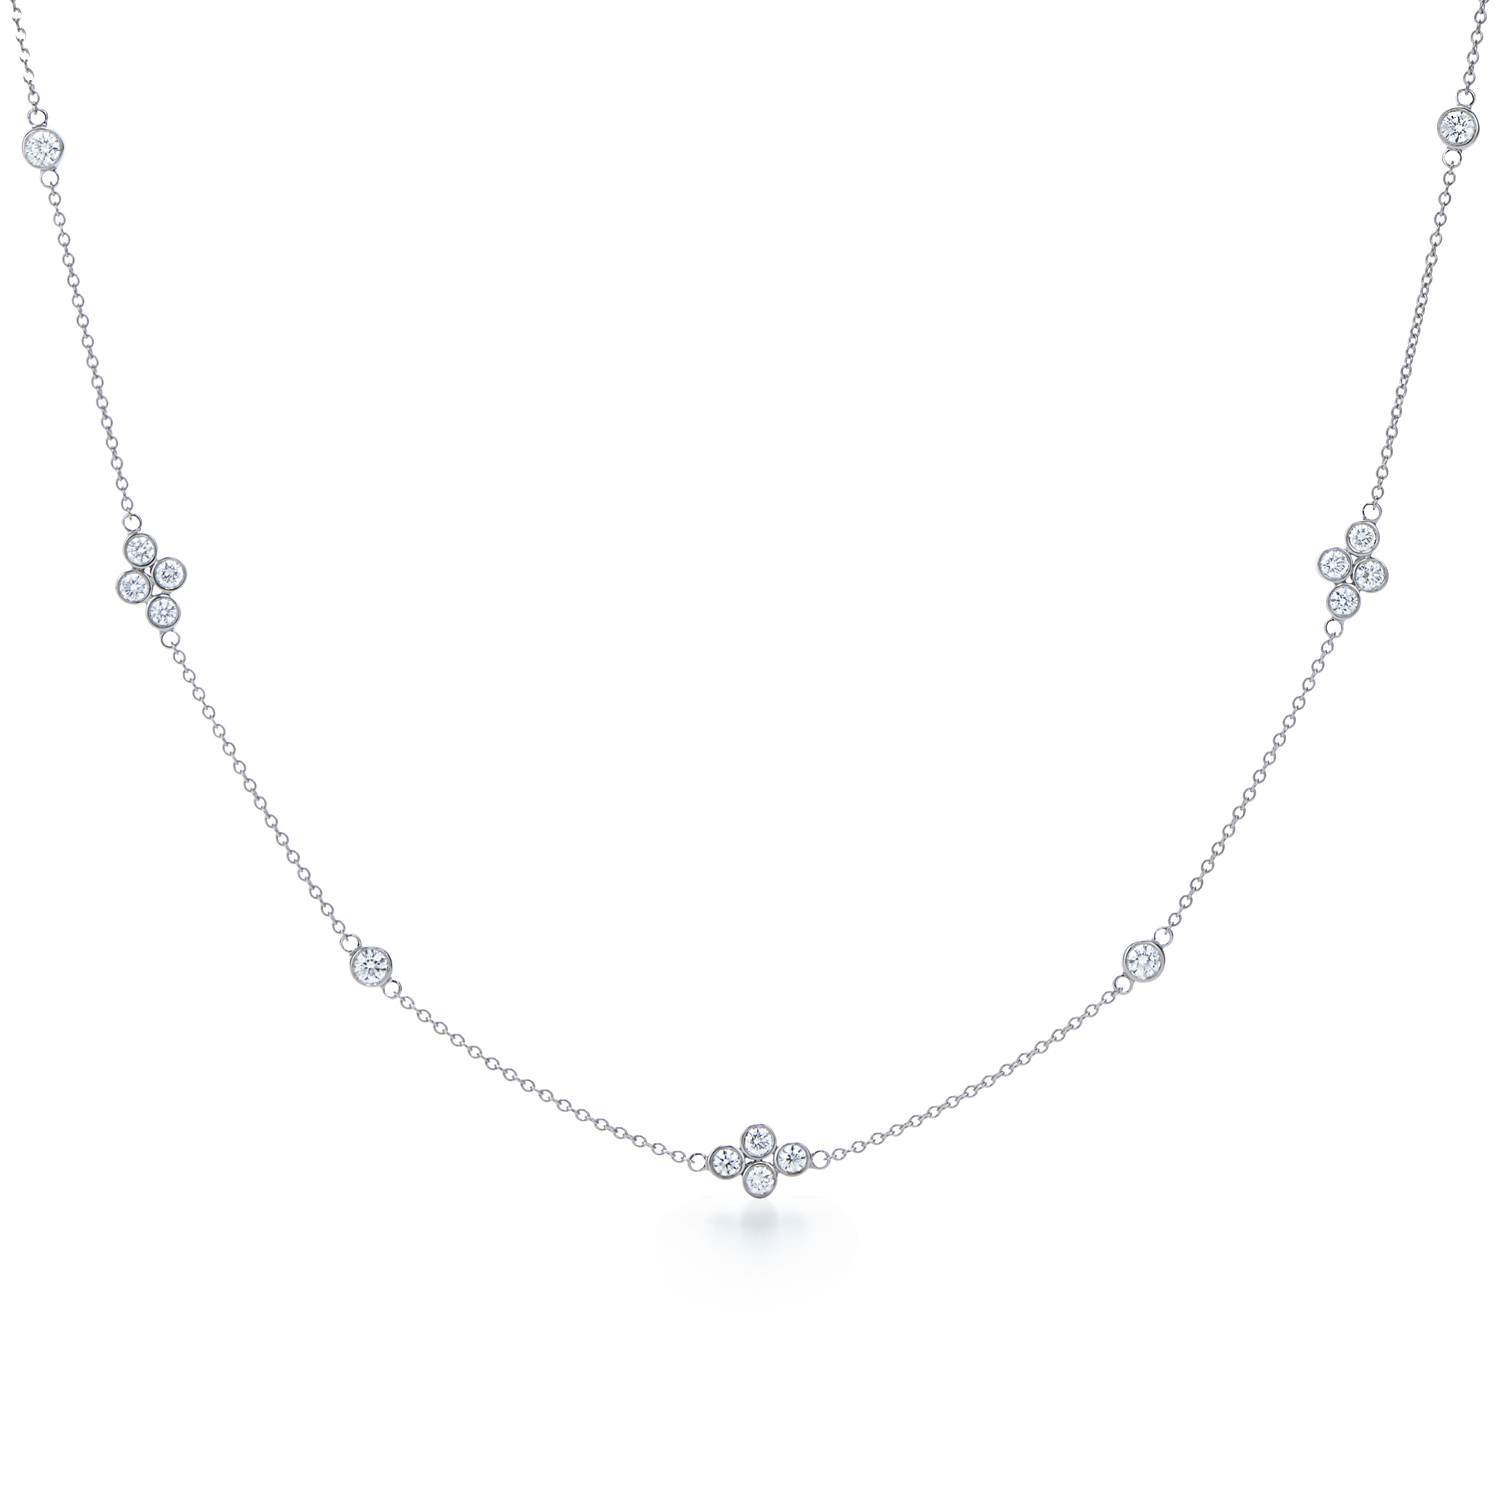 Shop Online for Elegant Diamond Necklace Sets - Impressive for any event